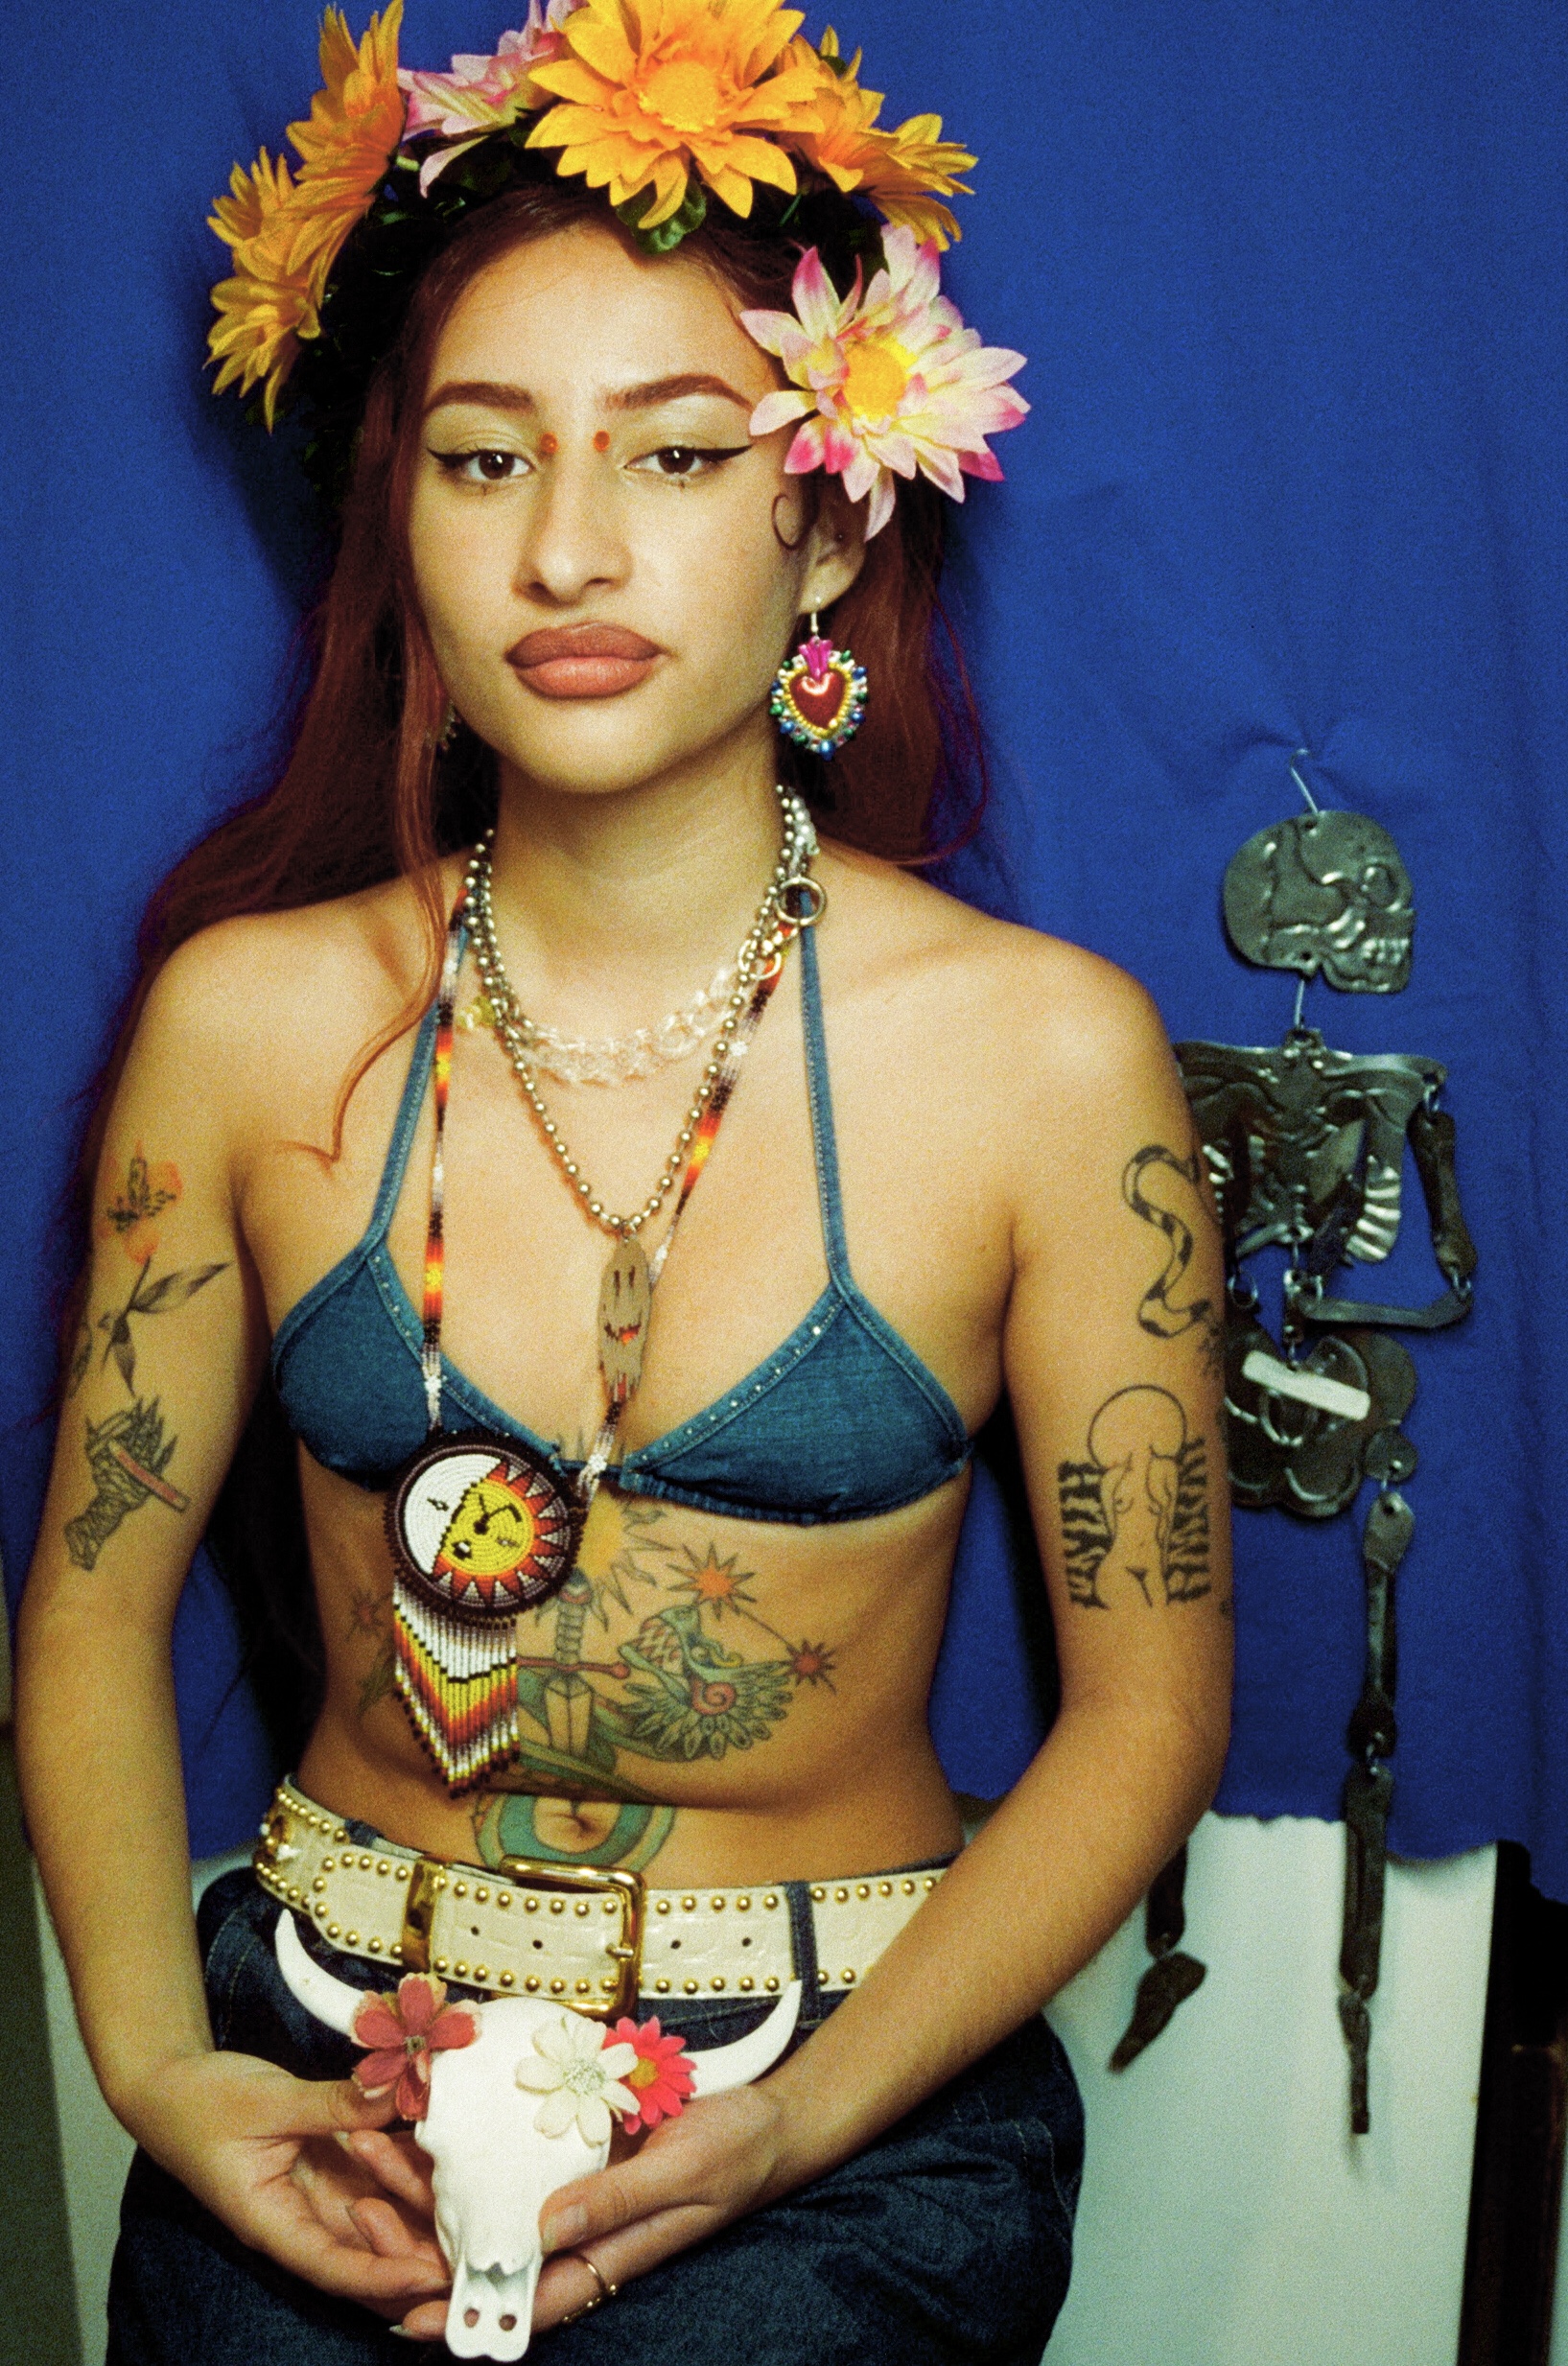 Tessa pose en haut de bikini et jean, le ventre orné d'un quetzalcoatl.